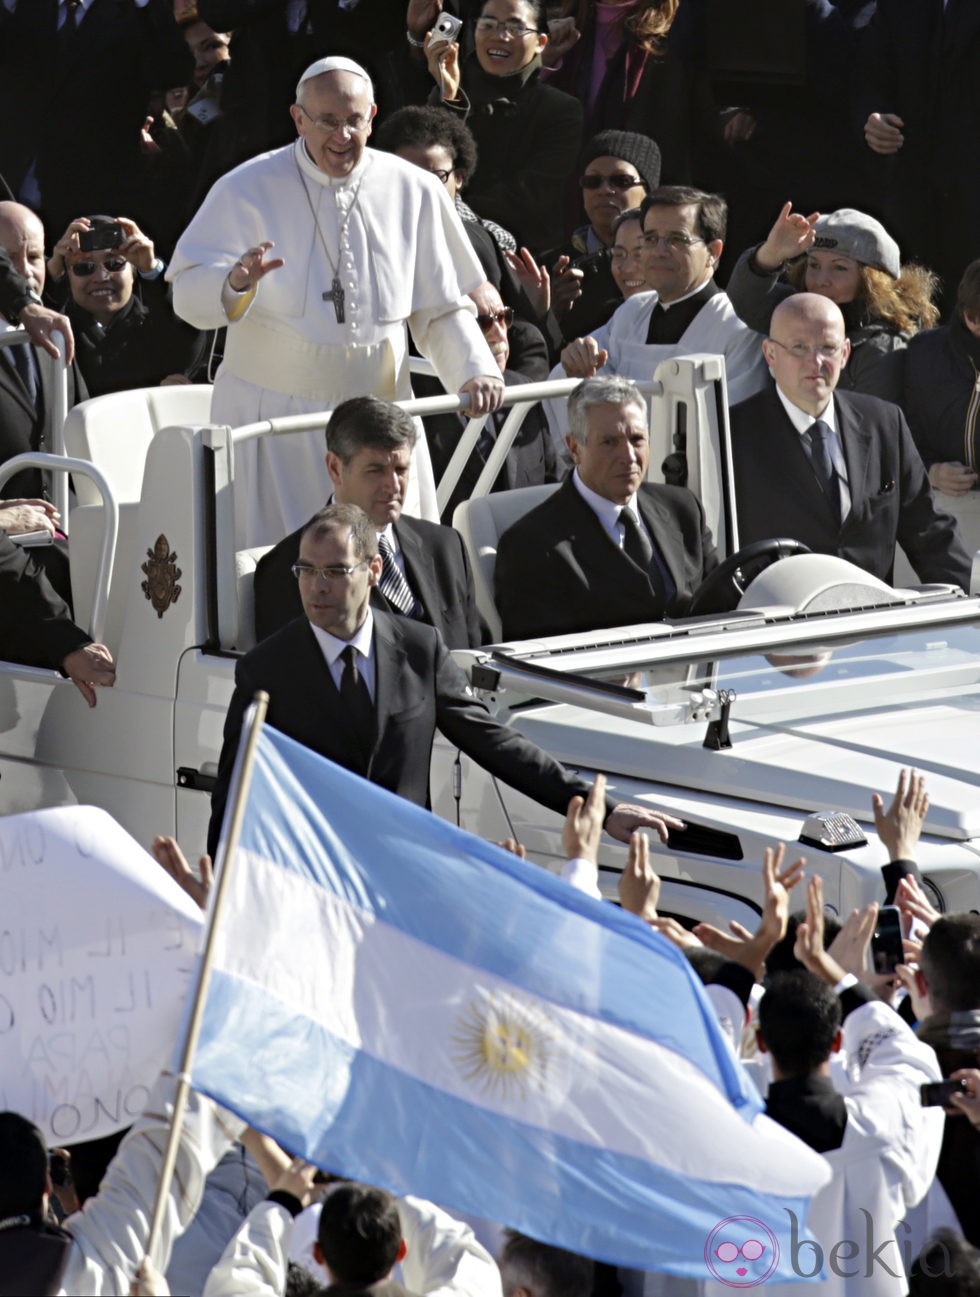 El Papa Francisco I saluda a los fieles antes de su Misa de entronización